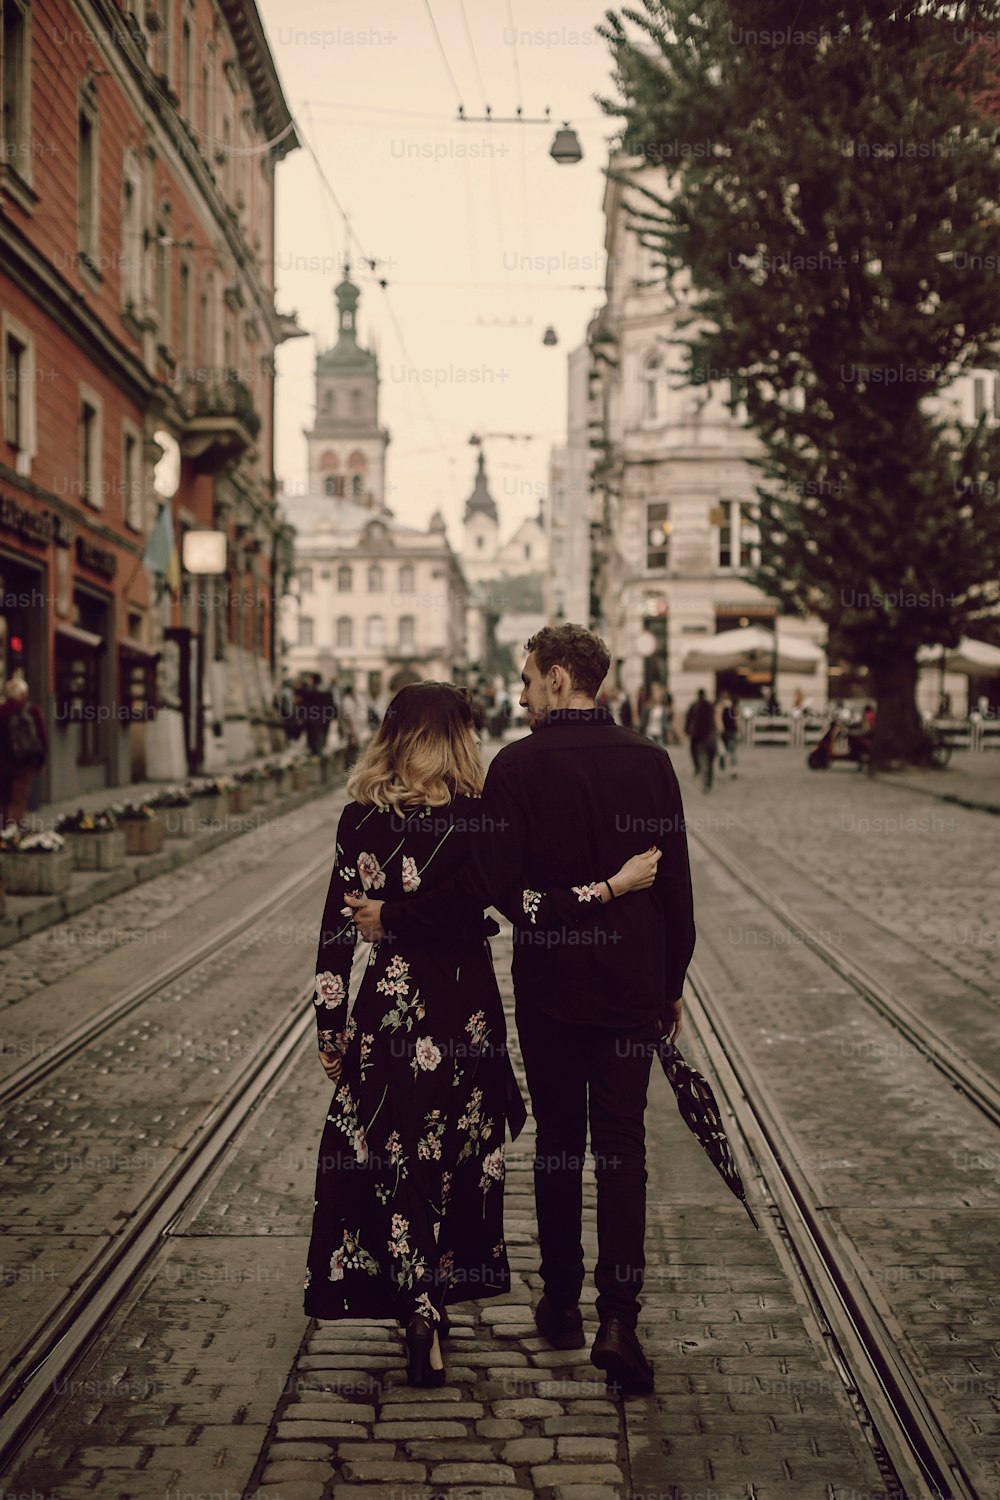 Stilvolles Zigeunerpaar verliebt spazieren und umarmen sich in der abendlichen City Street. Frau und Mann umarmen sich sanft, romantischer französischer atmosphärischer Moment. Liebesstimmung. Rückansicht